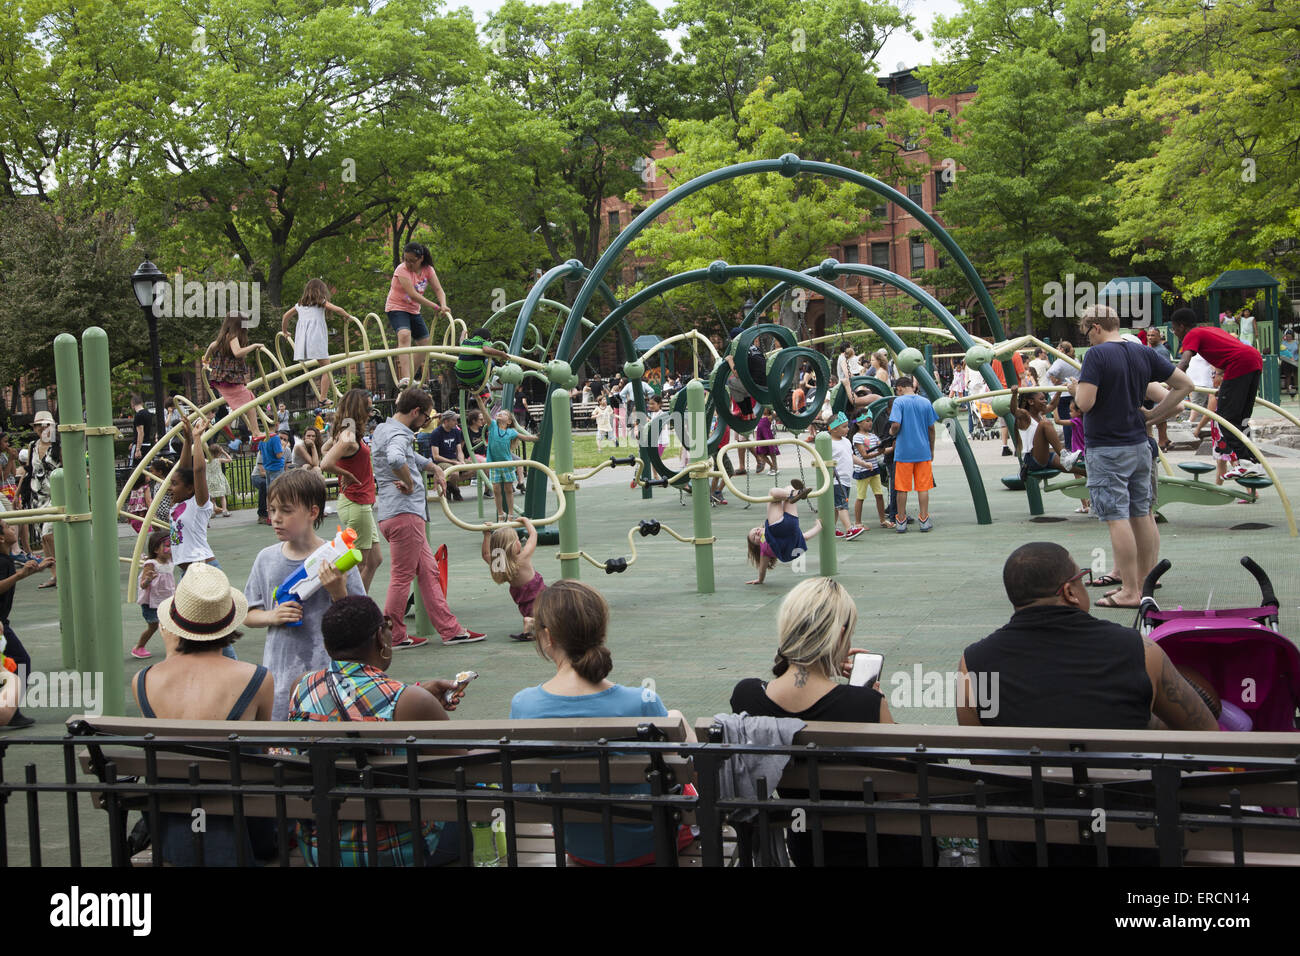 Vicinanze Parco giochi è affollata con famiglie e bambini in una calda giornata di primavera a Park Slope, Brooklyn, New York. Foto Stock